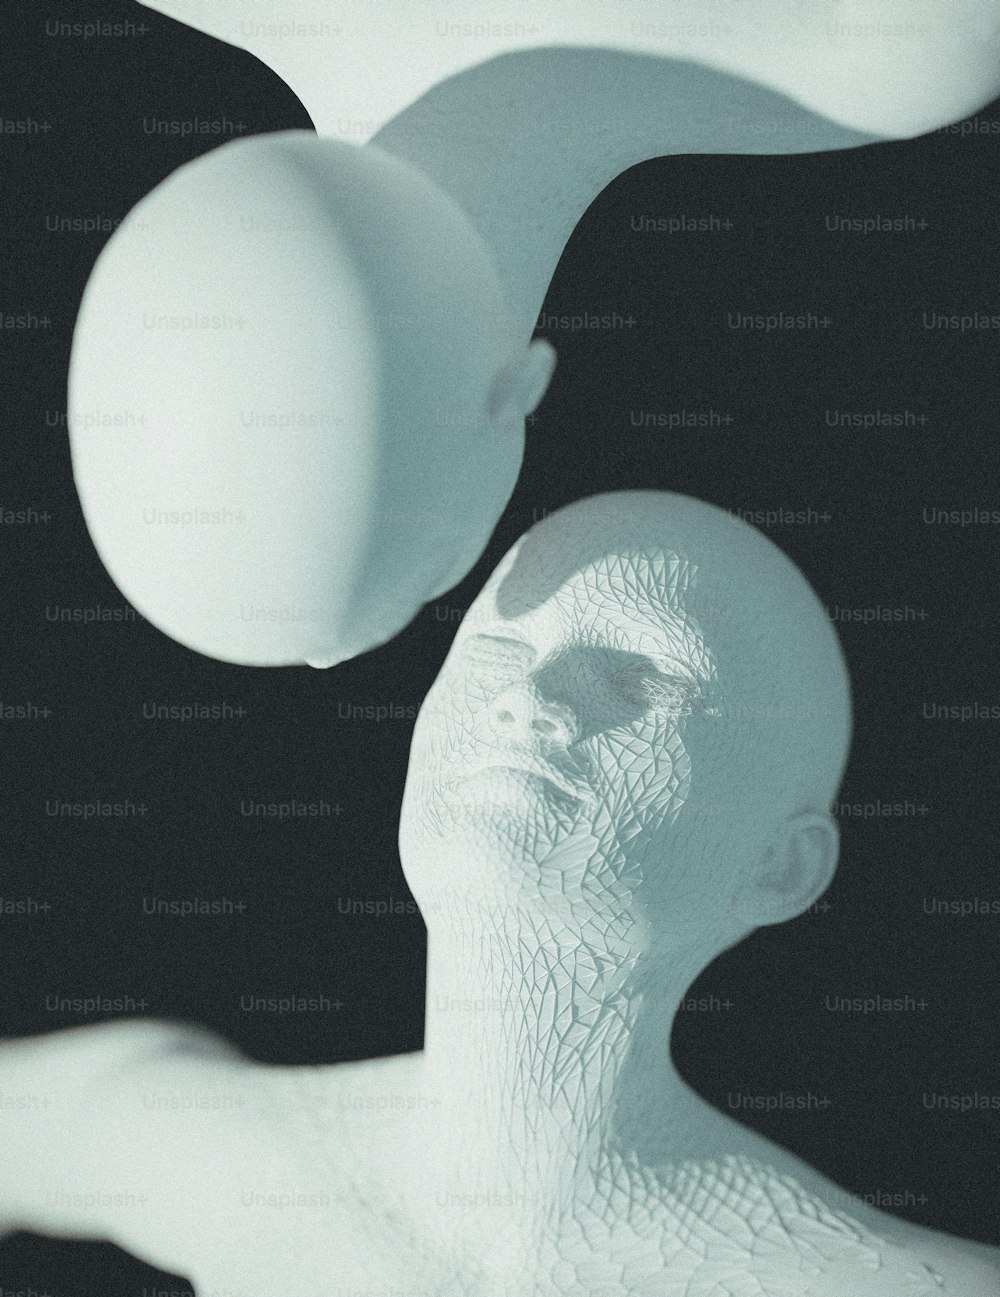 Una escultura blanca de un hombre y dos bolas blancas